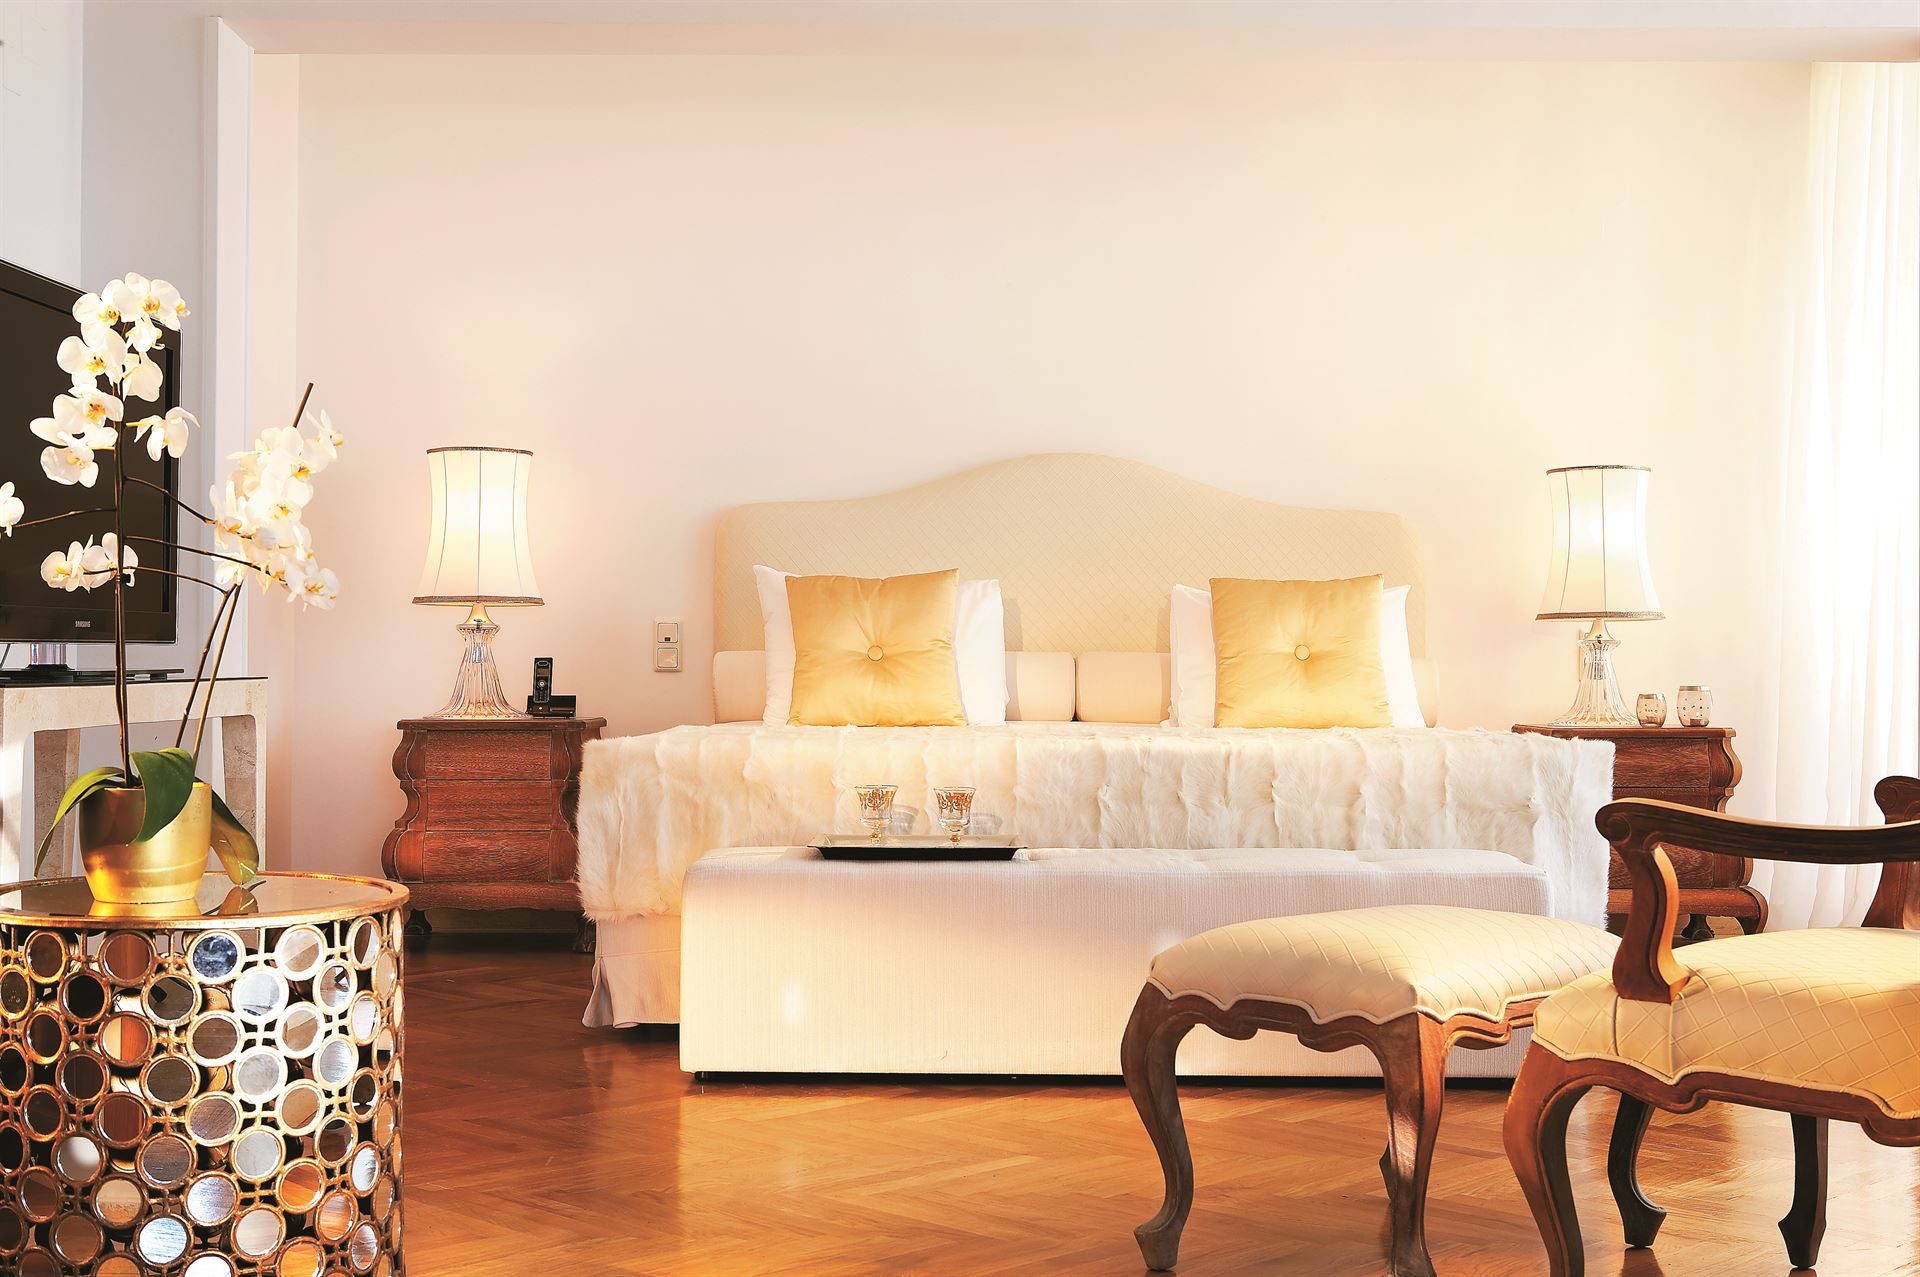 Grecotel Creta Palace Luxury Resort: Palace Luxury Suite